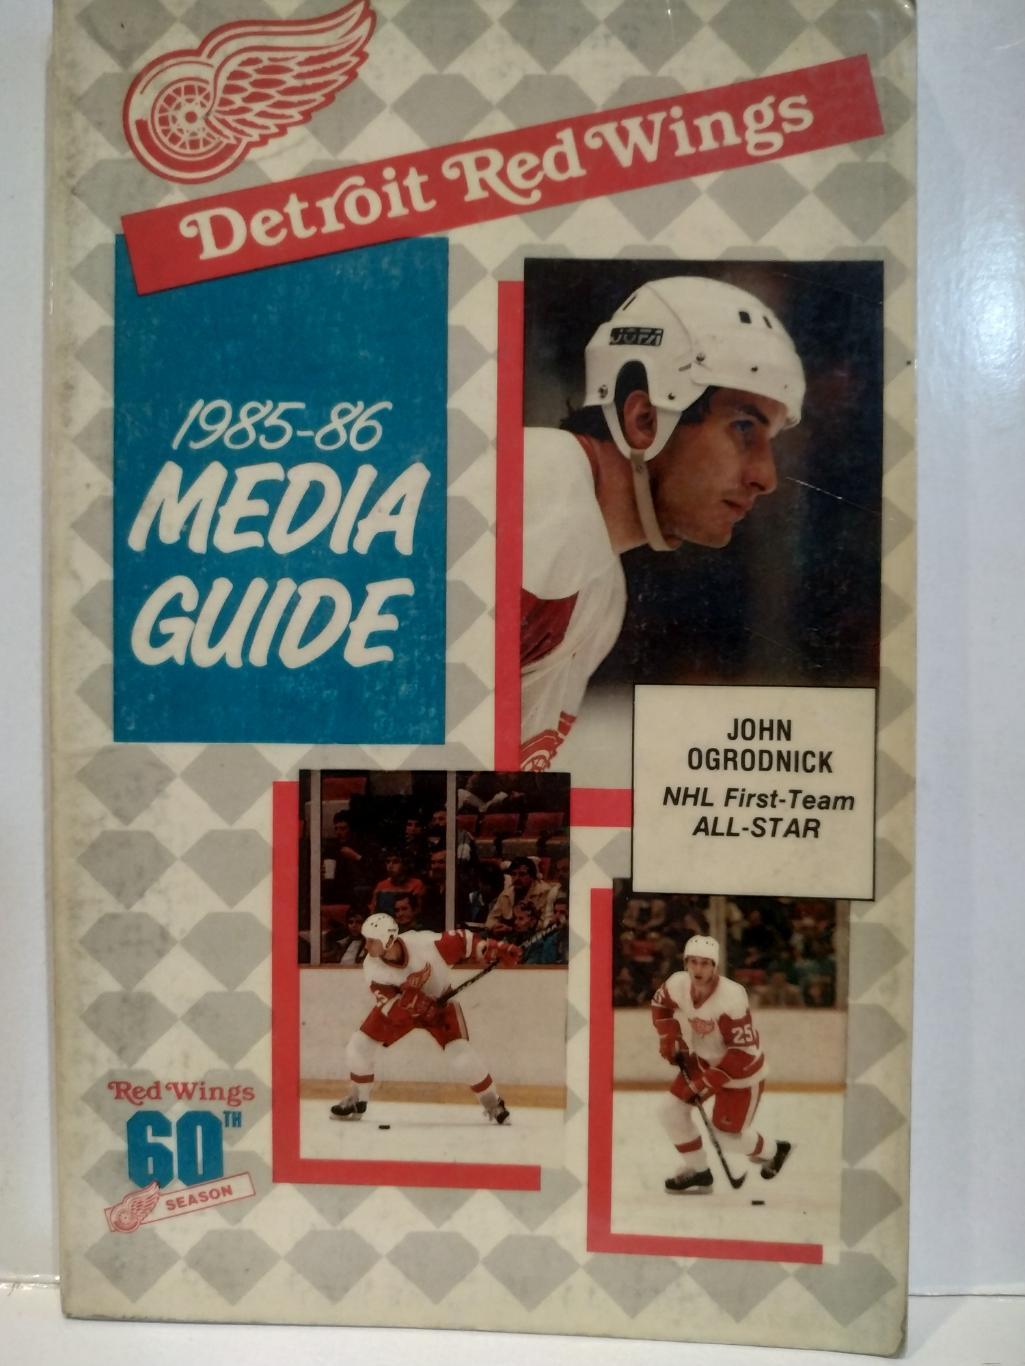 ХОККЕЙ СПРАВОЧНИК ЕЖЕГОДНИК НХЛ ДЕТРОЙТ 1985-86 DETROIT RED WINGS MEDIA GUIDE